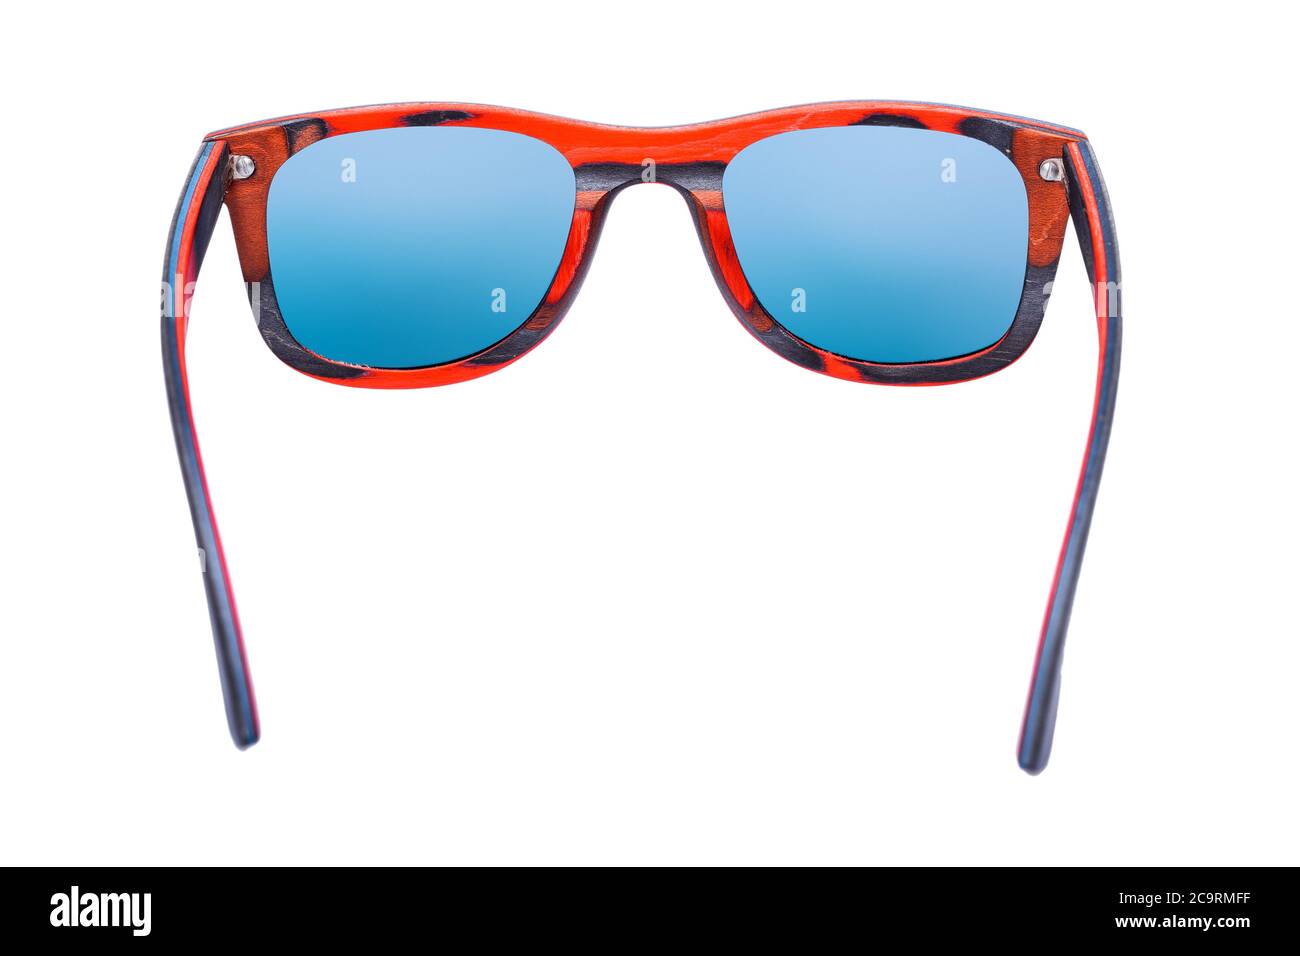 gafas de sol cuadradas estilo 70 de madera de material rojo y gafas azules aisladas sobre un fondo blanco, vista lateral trasera 3/4 Fotografía stock - Alamy